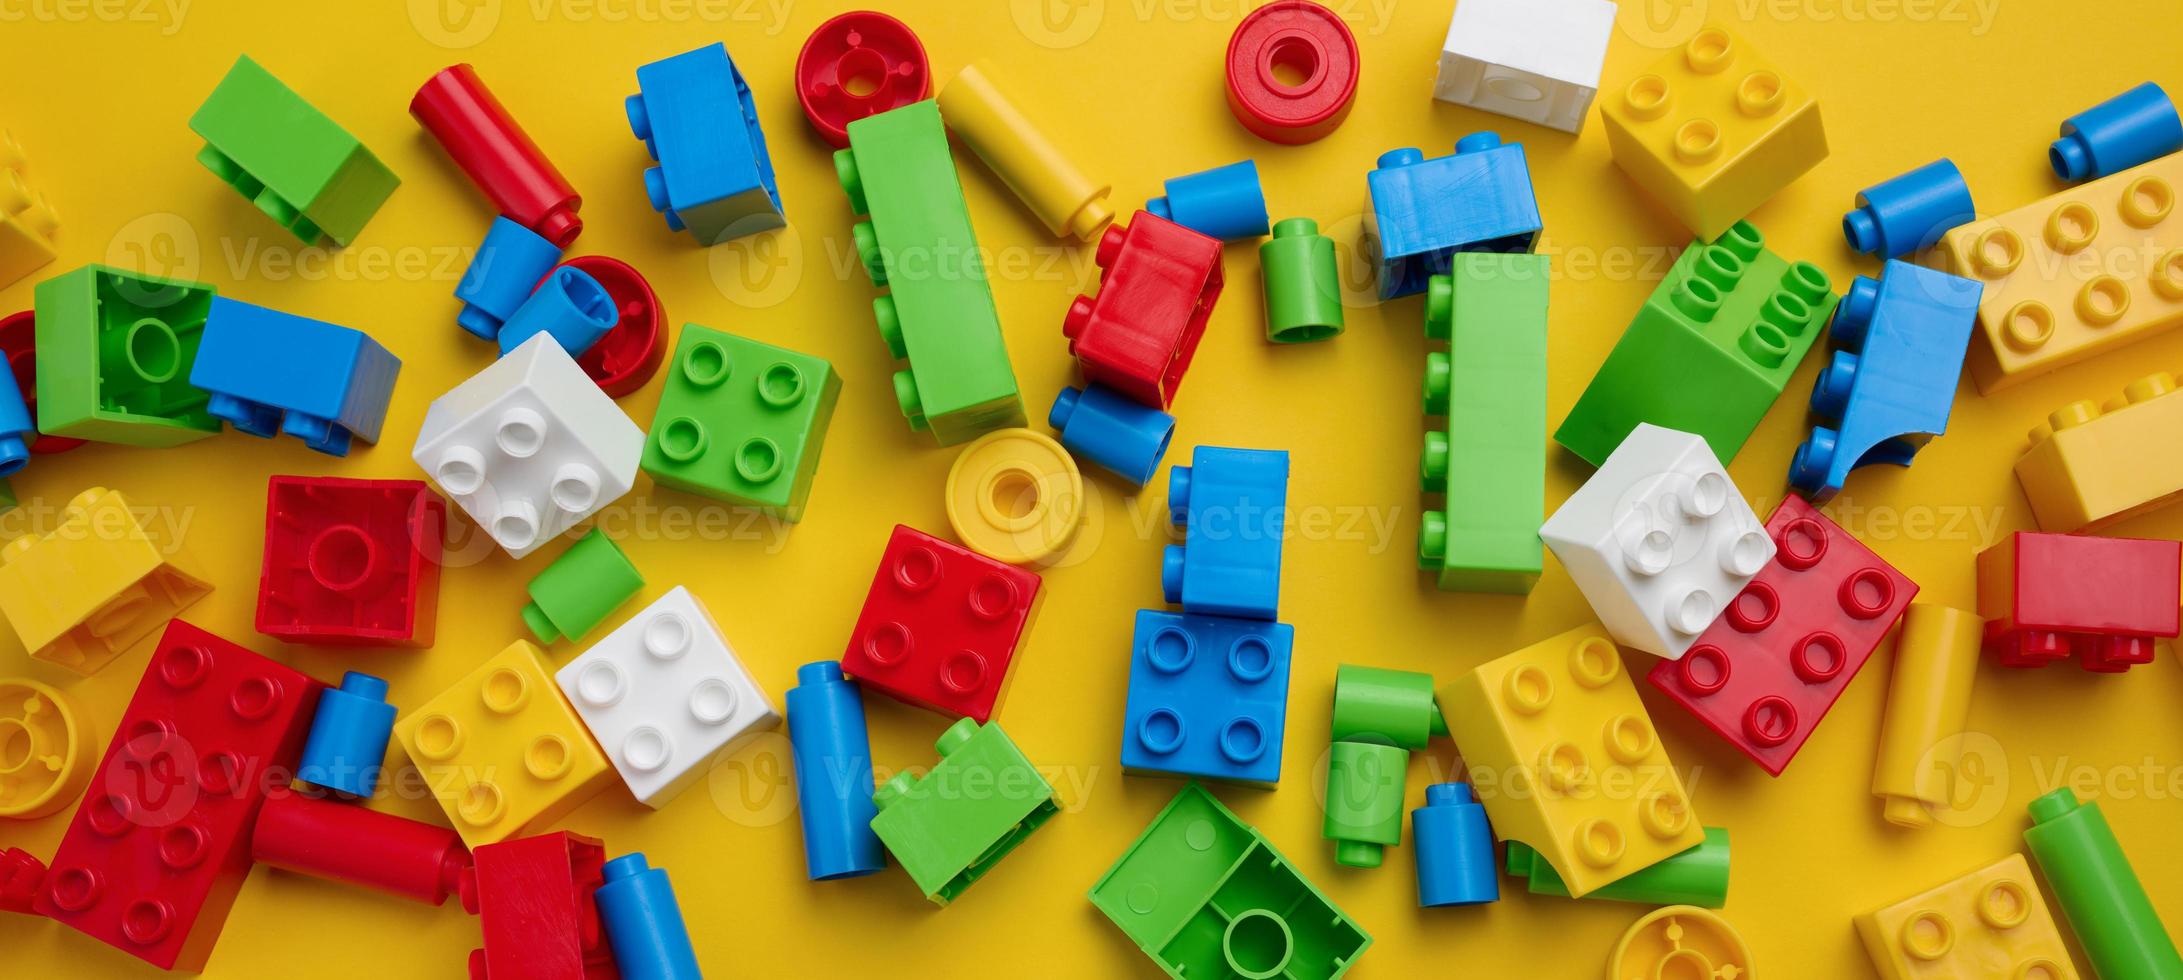 verstreute Teile eines Kinderdesigners aus Kunststoff, Ansicht von oben. gelber hintergrund, kopierraum foto